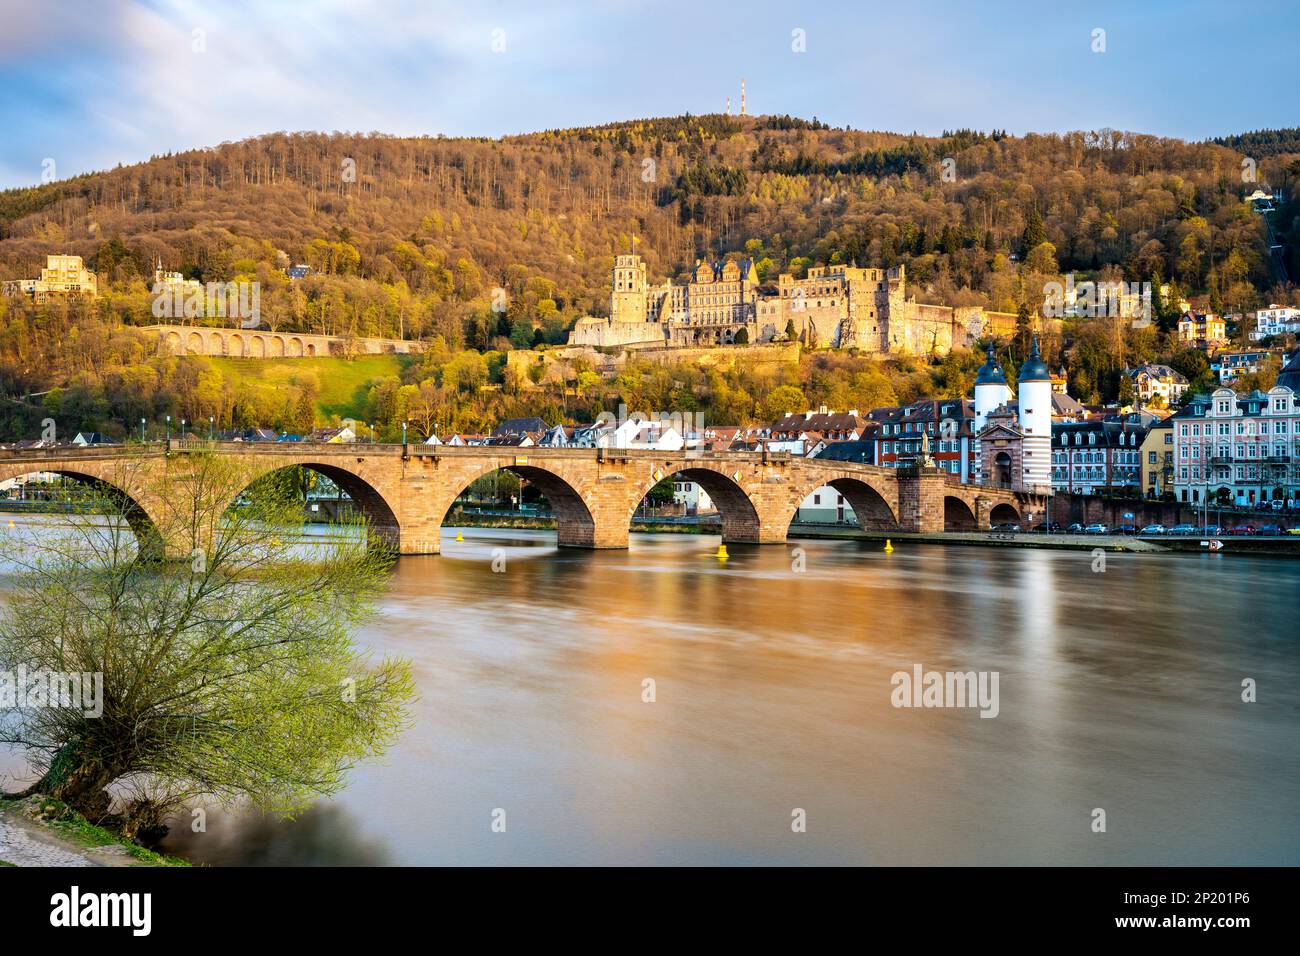 Die Altstadt von Heidelberg mit dem Schloss, der Alten Brücke, dem Fluss Neckar und dem Brückentor. Das Bild stammt aus der Öffentlichkeit. Goldene Stunde, Long Exposu Stockfoto